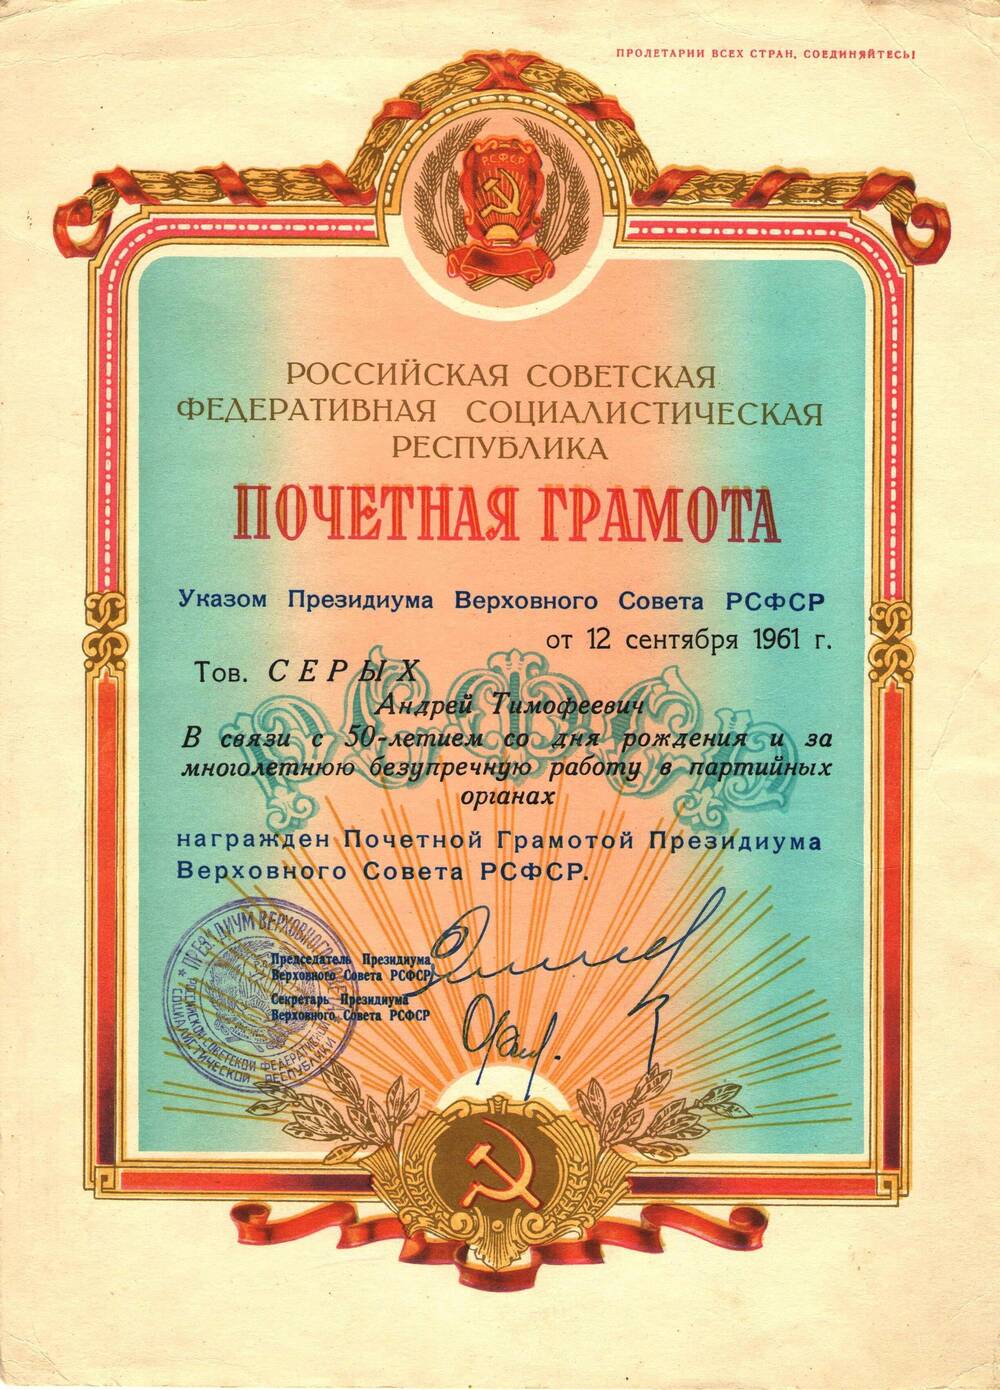 Почетная грамота Серых Андрею Тимофеевичу в связи с 50-летием со дня рождения и за многолетнюю безупречную работу в партийных органах.